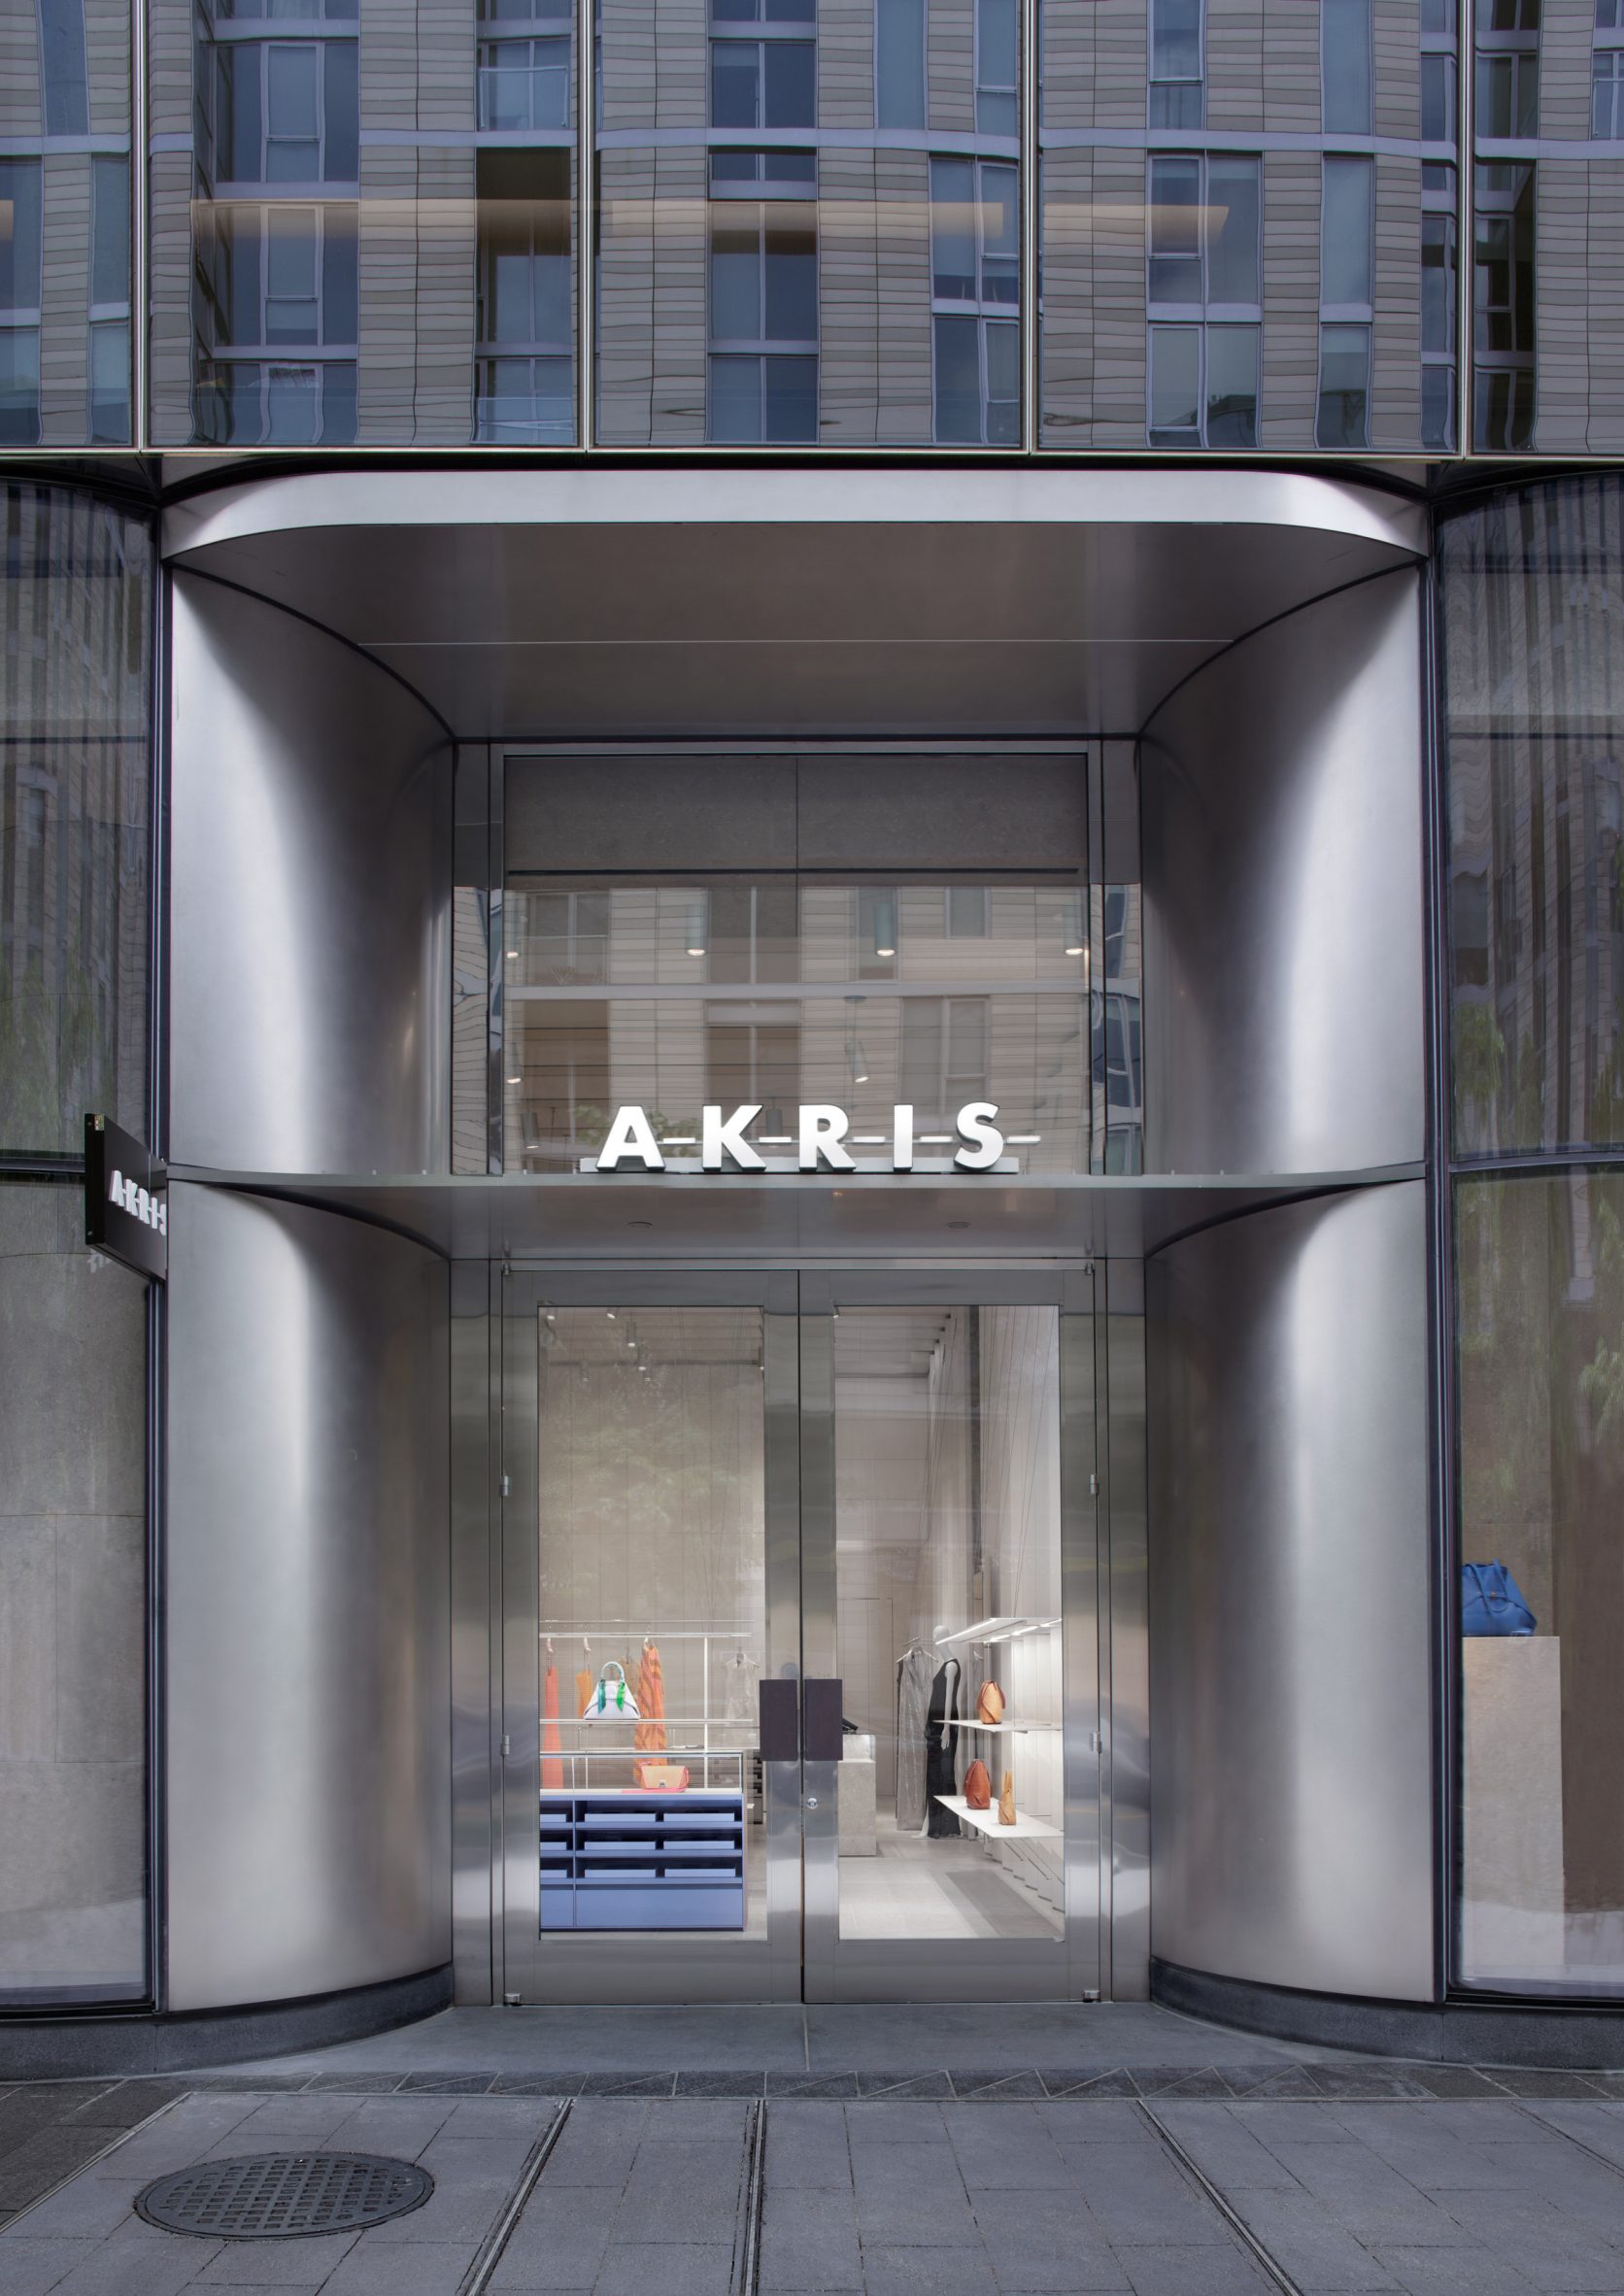 Exterior view of the Akris store in Washington DC